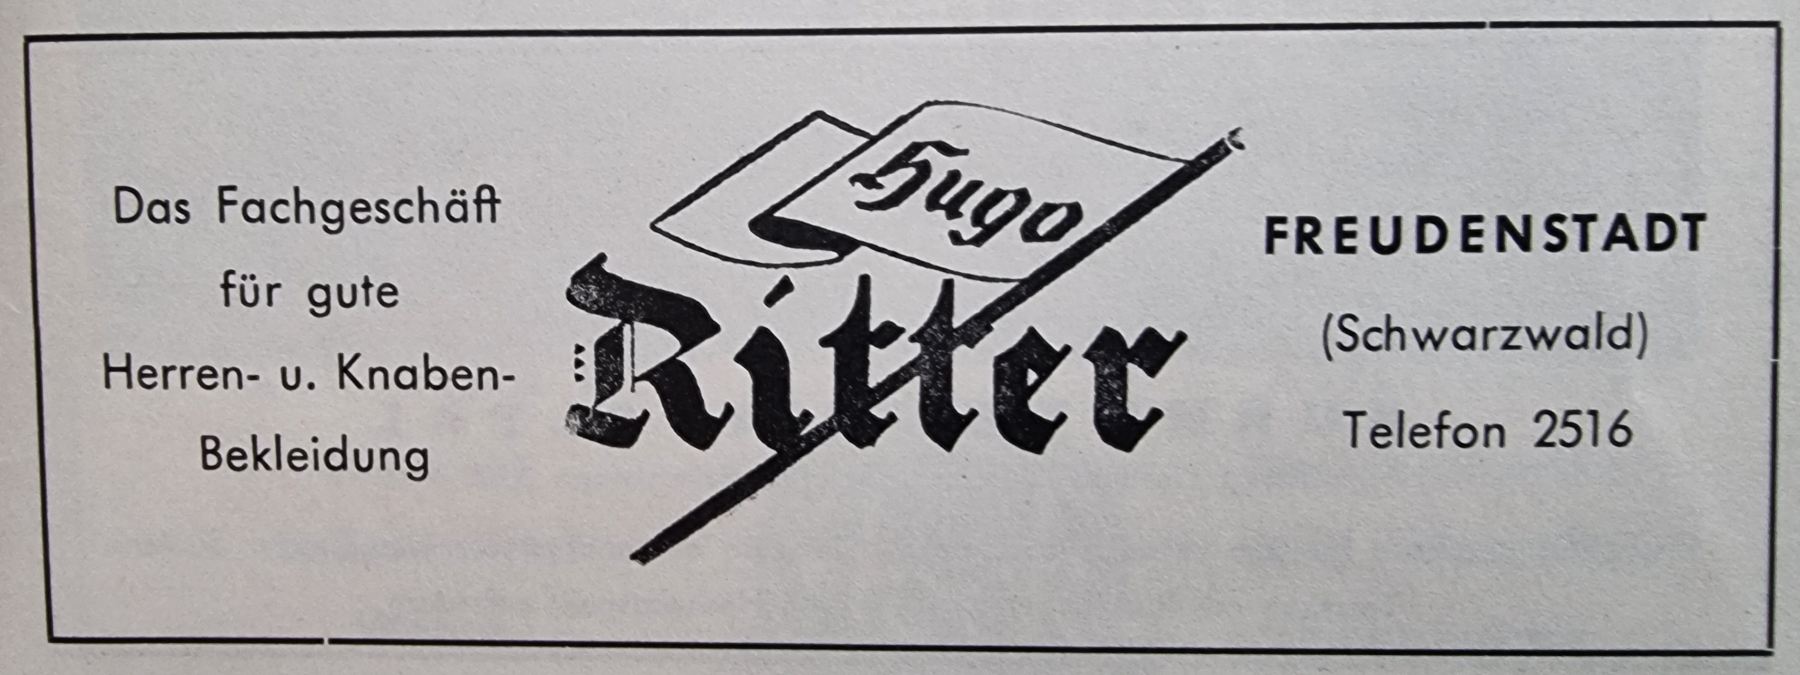 Hugo-Ritter-FDS